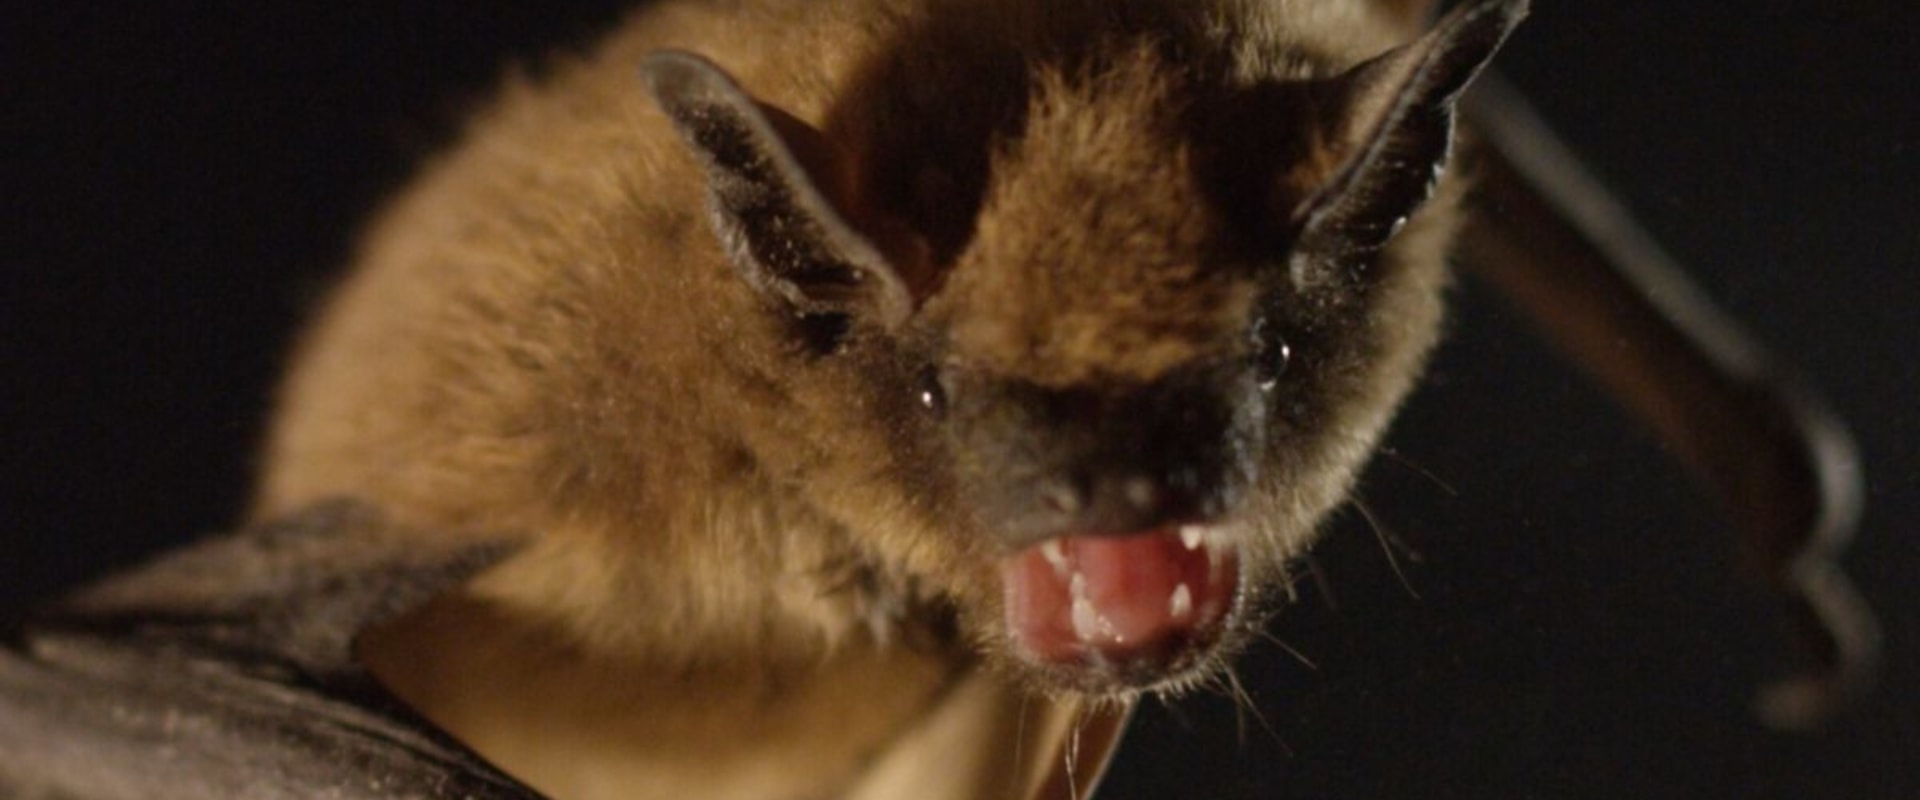 Are bats in attic harmful?